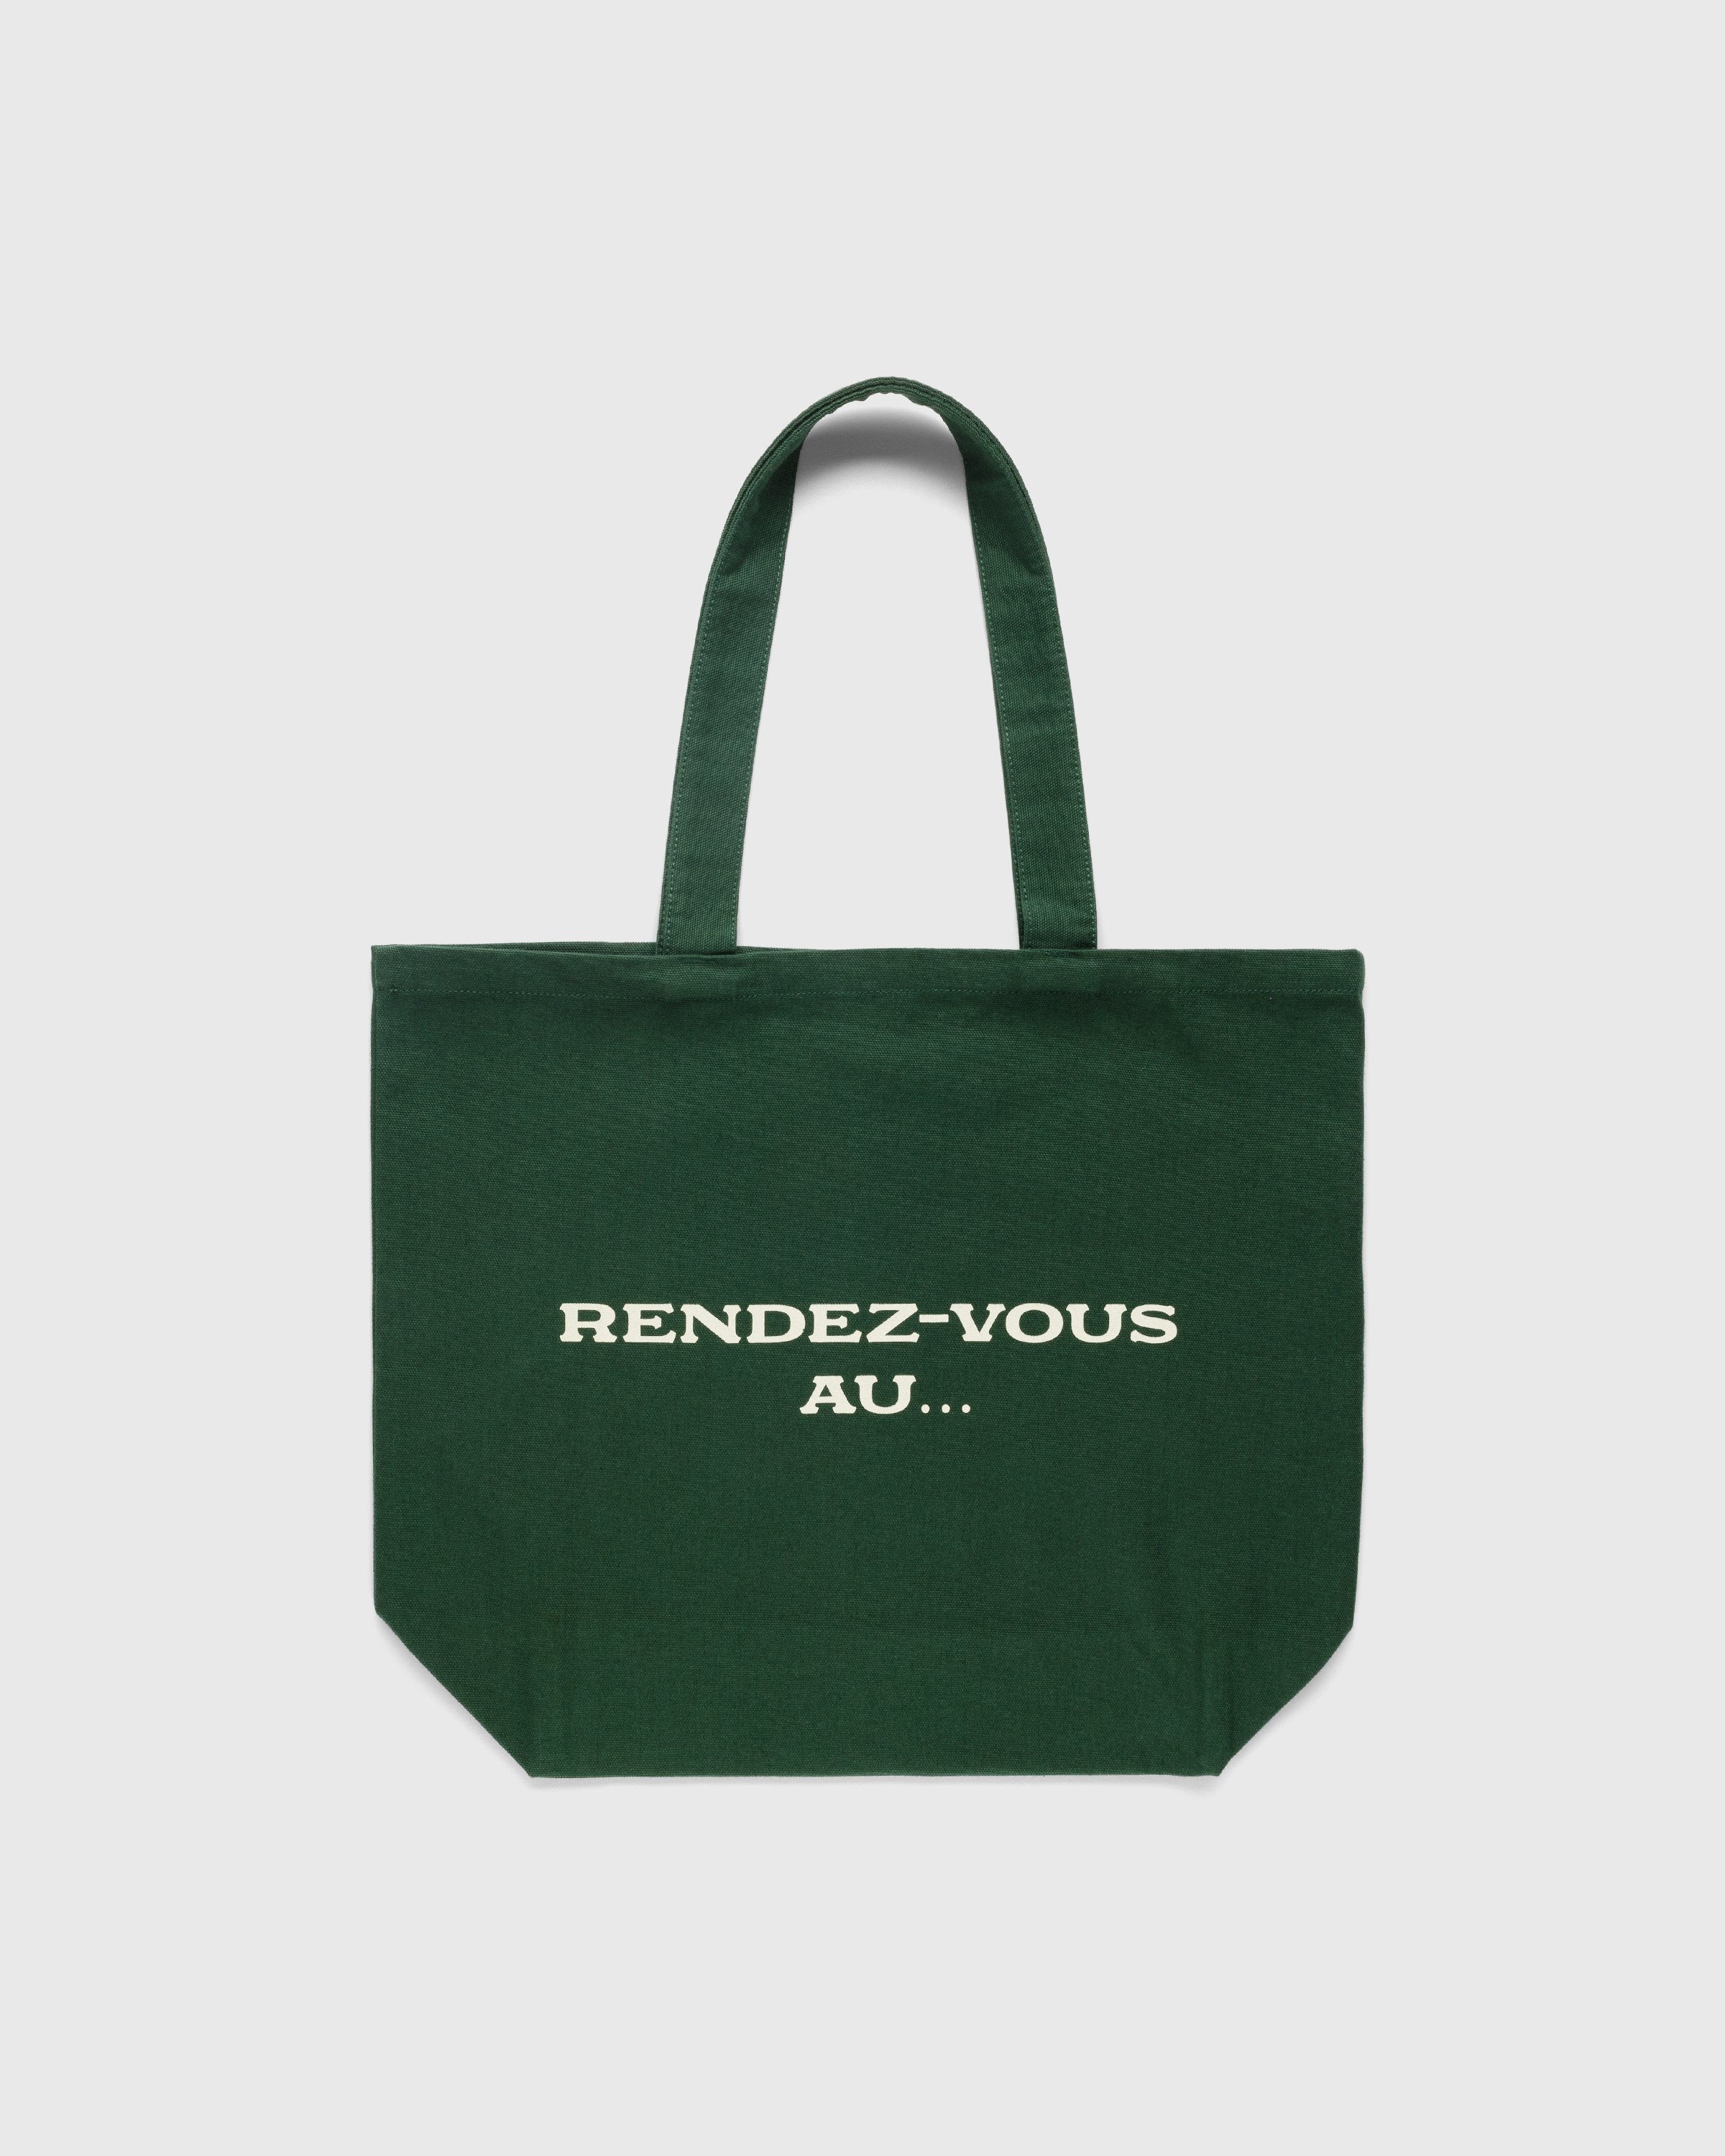 Café de Flore x Highsnobiety - Not In Paris 4 Rendez-vous Au Tote Bag Green - Accessories - Green - Image 2